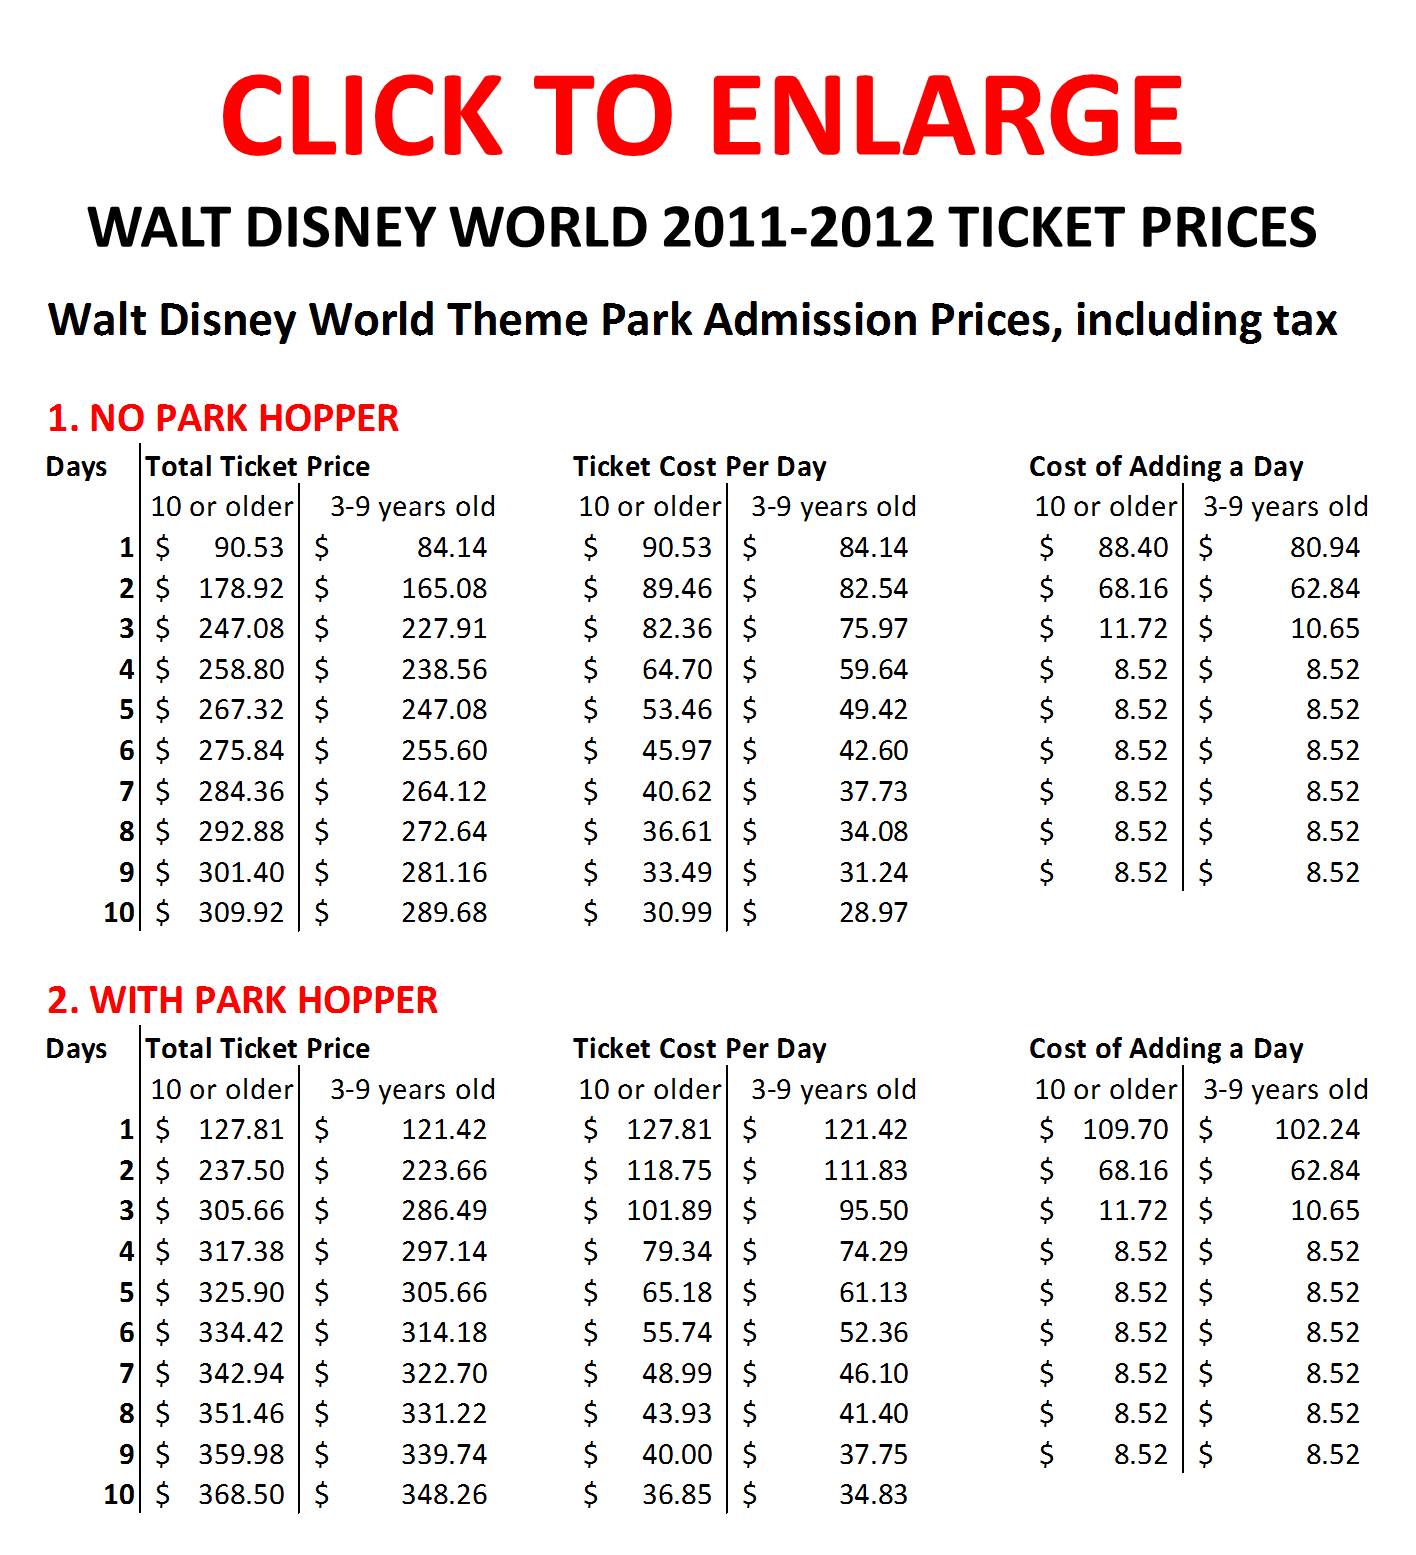 Disney-World-2011-2012-Ticket-Prices.jpg